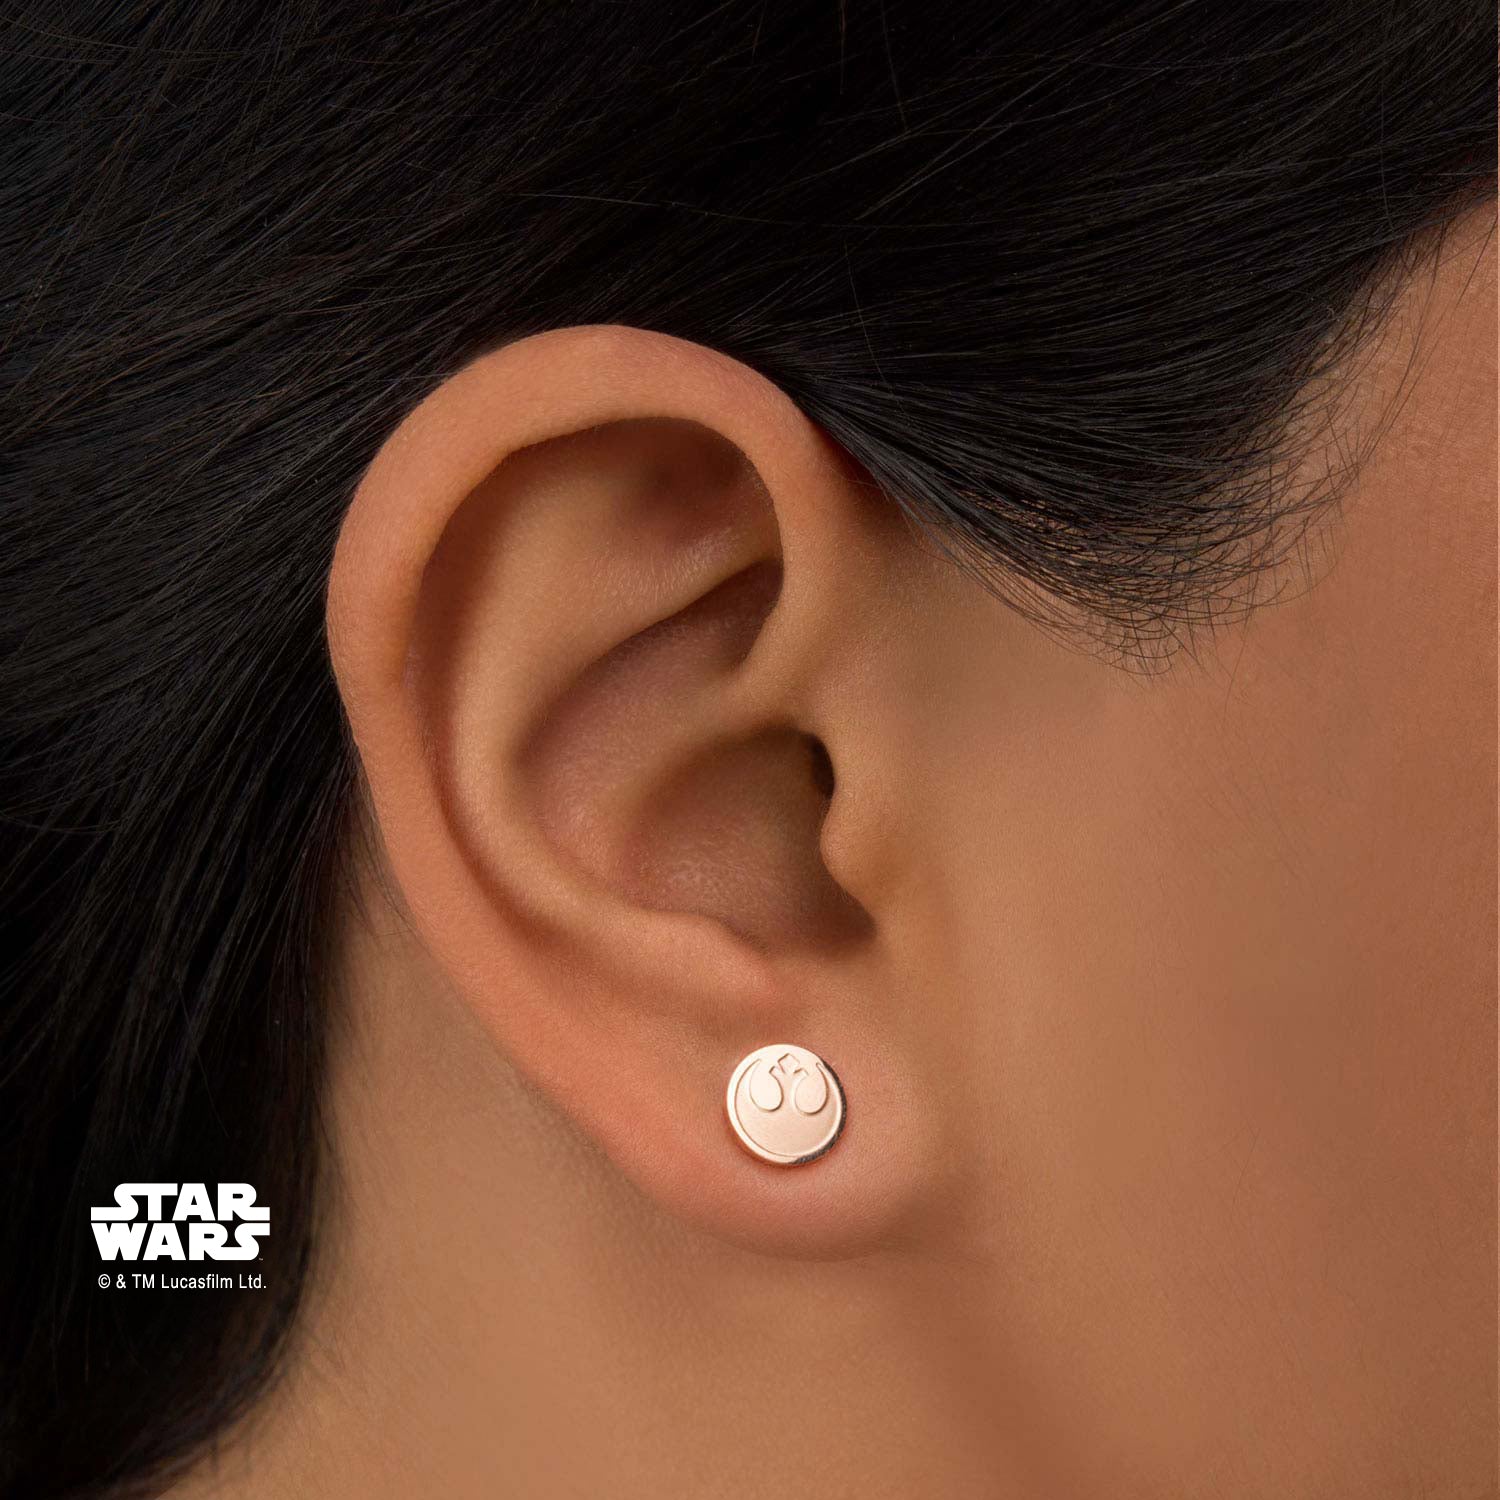 Star Wars Rebel Alliance Symbol Stud Earrings